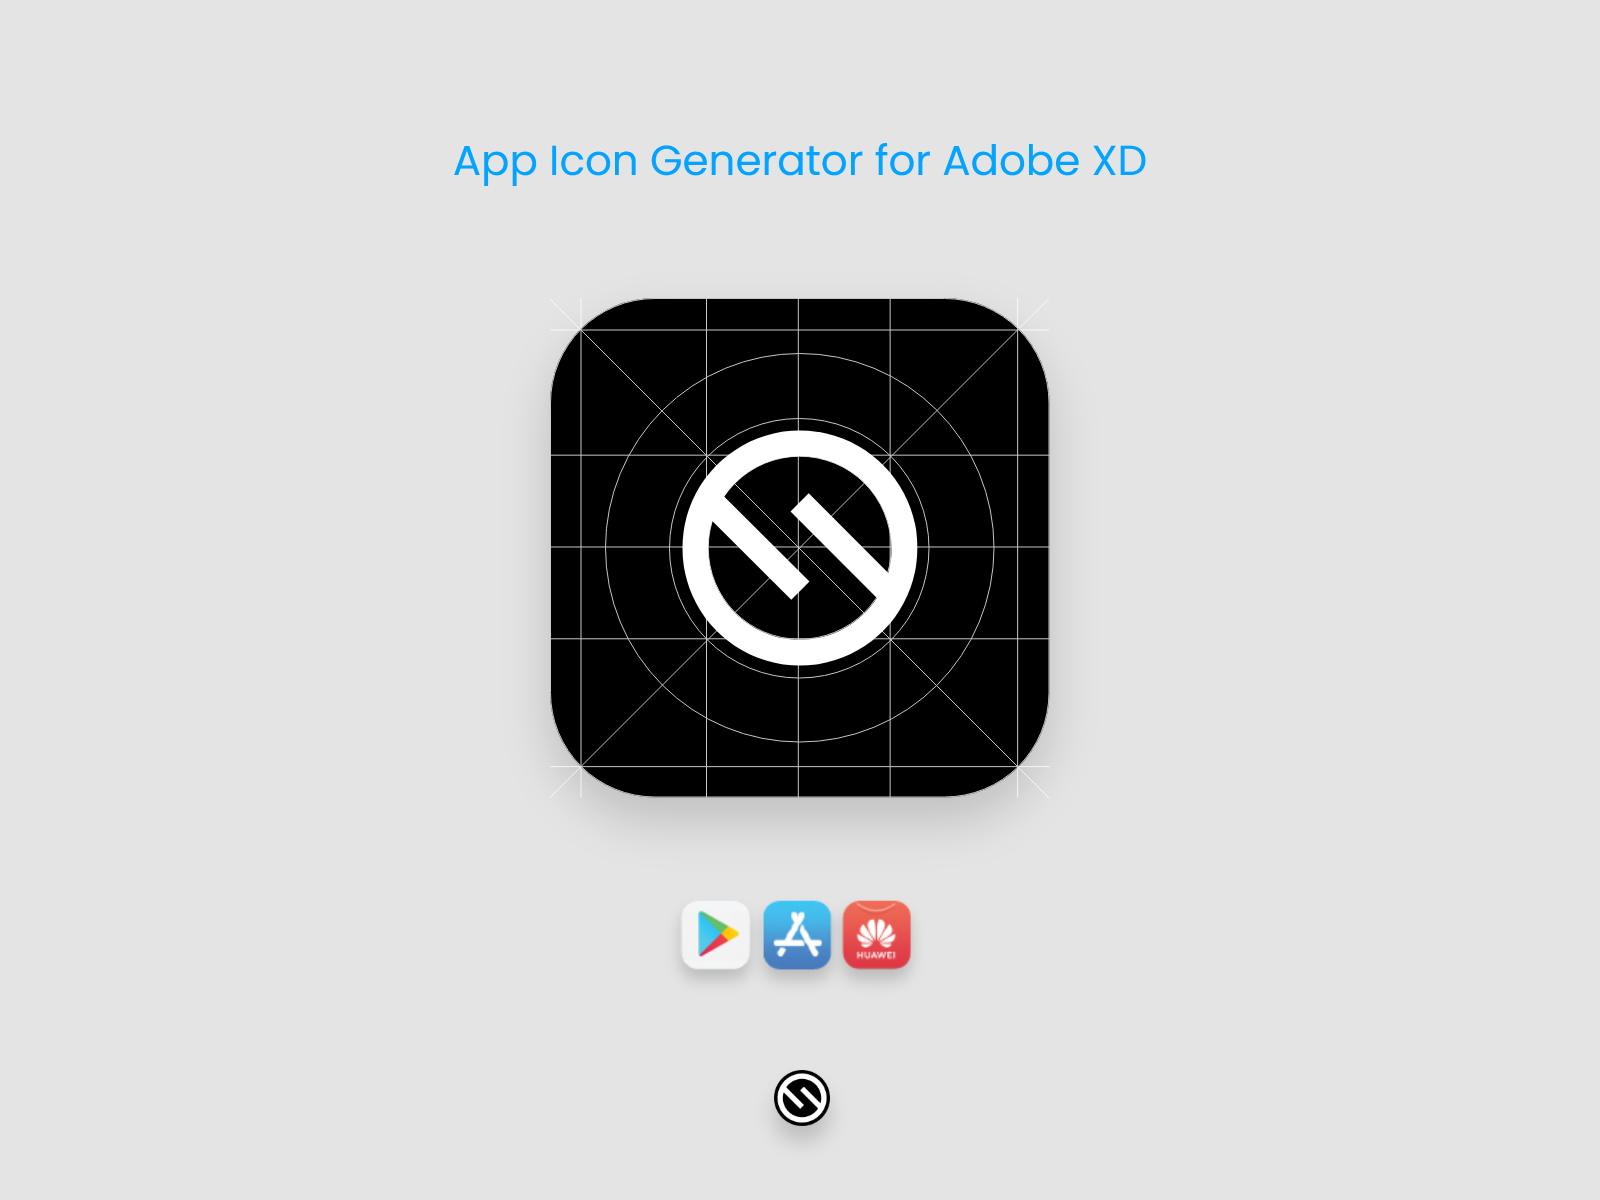 App Icon Generator By Selçuk Avcı On Dribbble